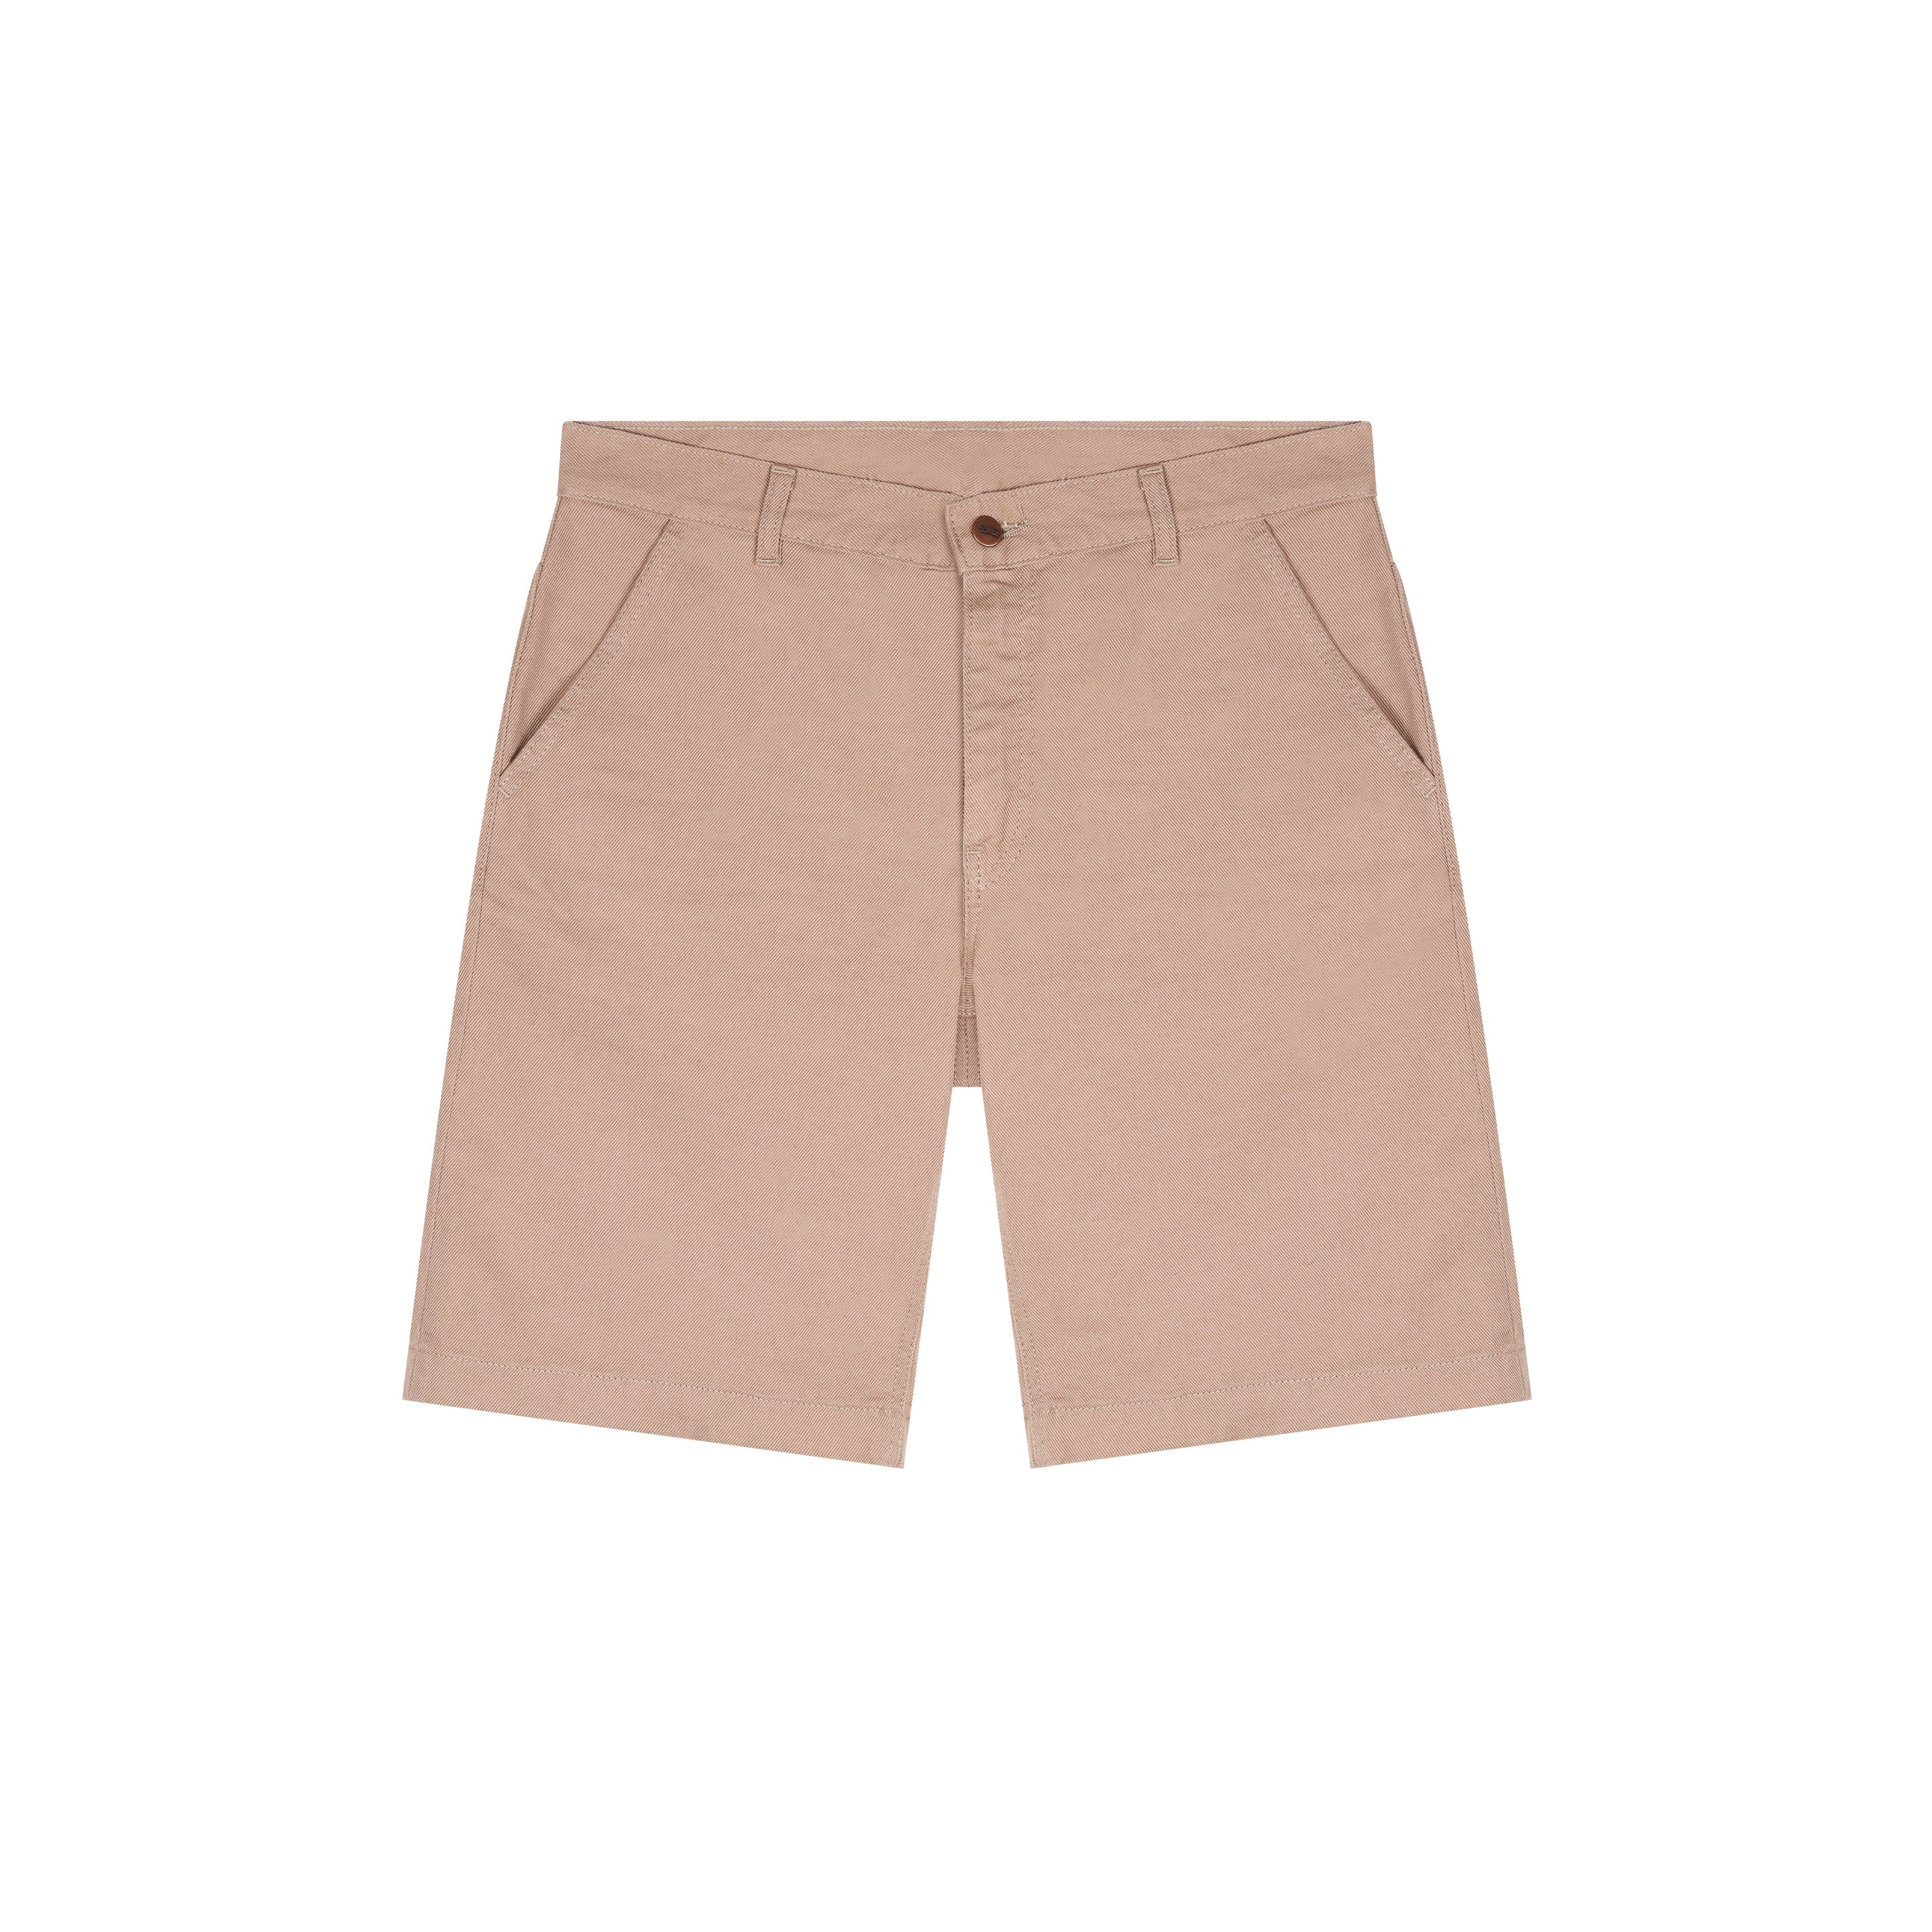 Beige fitted straight men's shorts – Atelier Tuffery